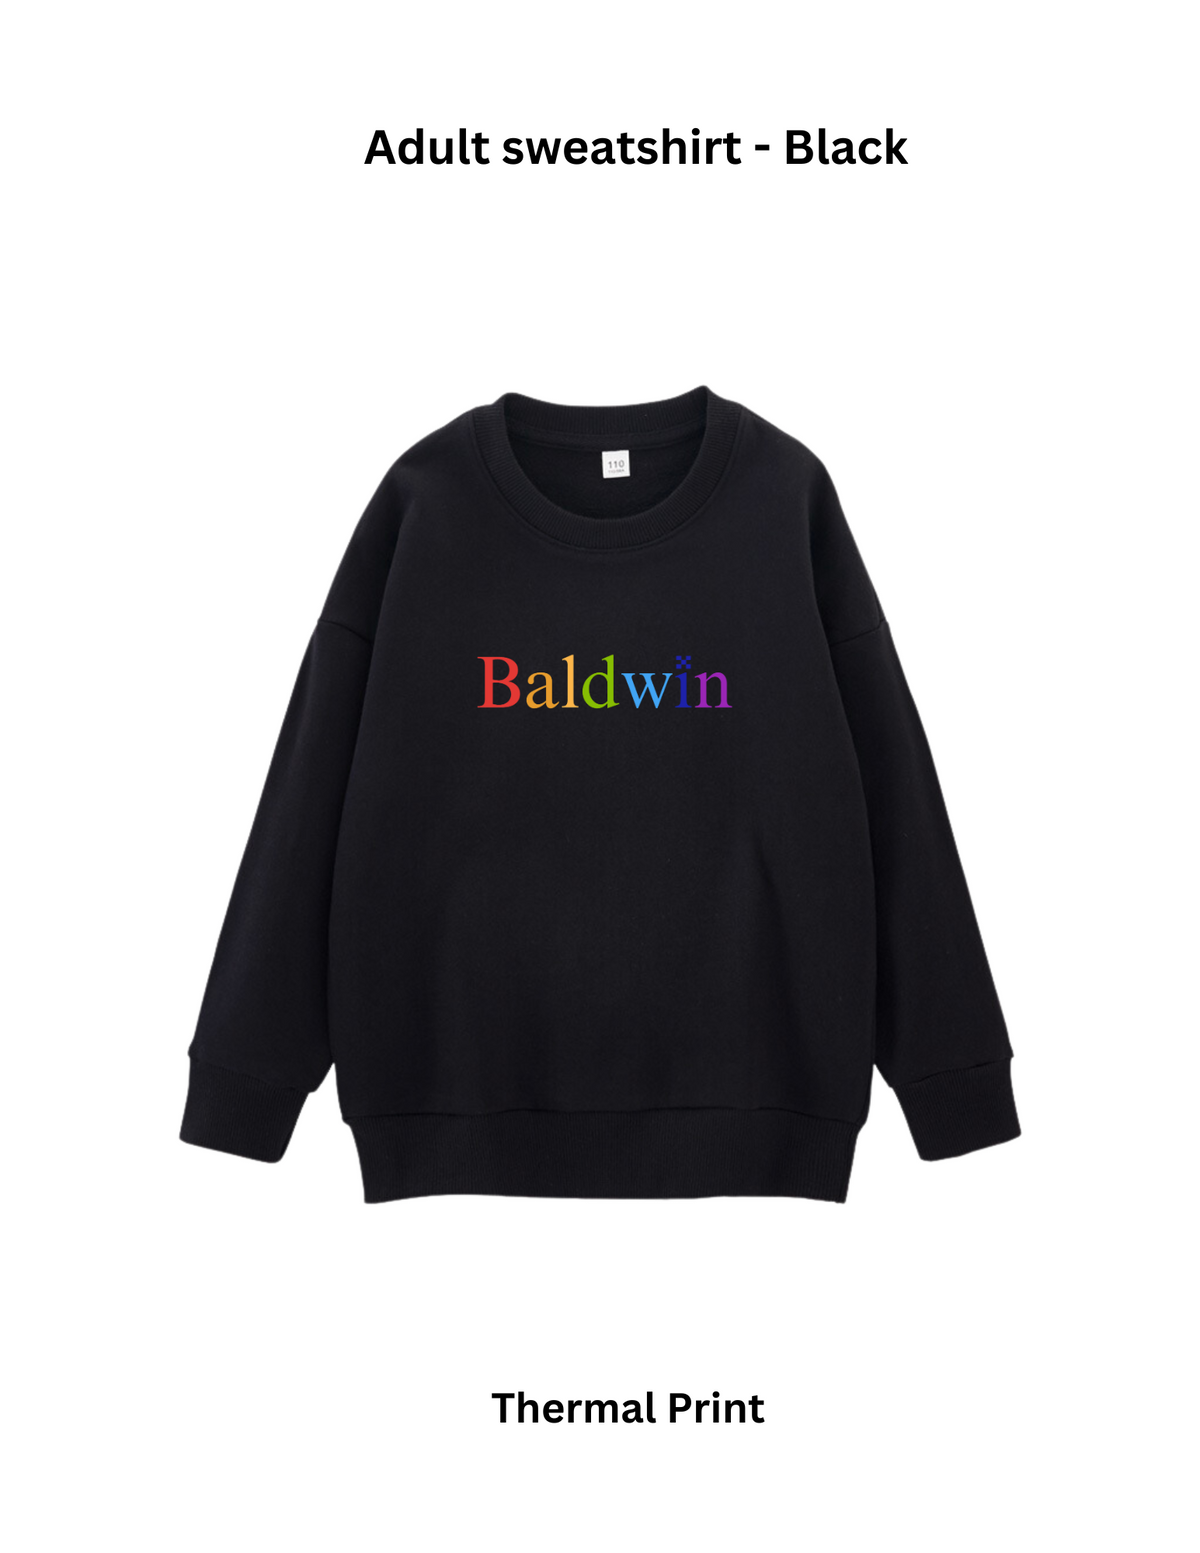 Baldwin Elementary School Swags - Adult Sweatshirt